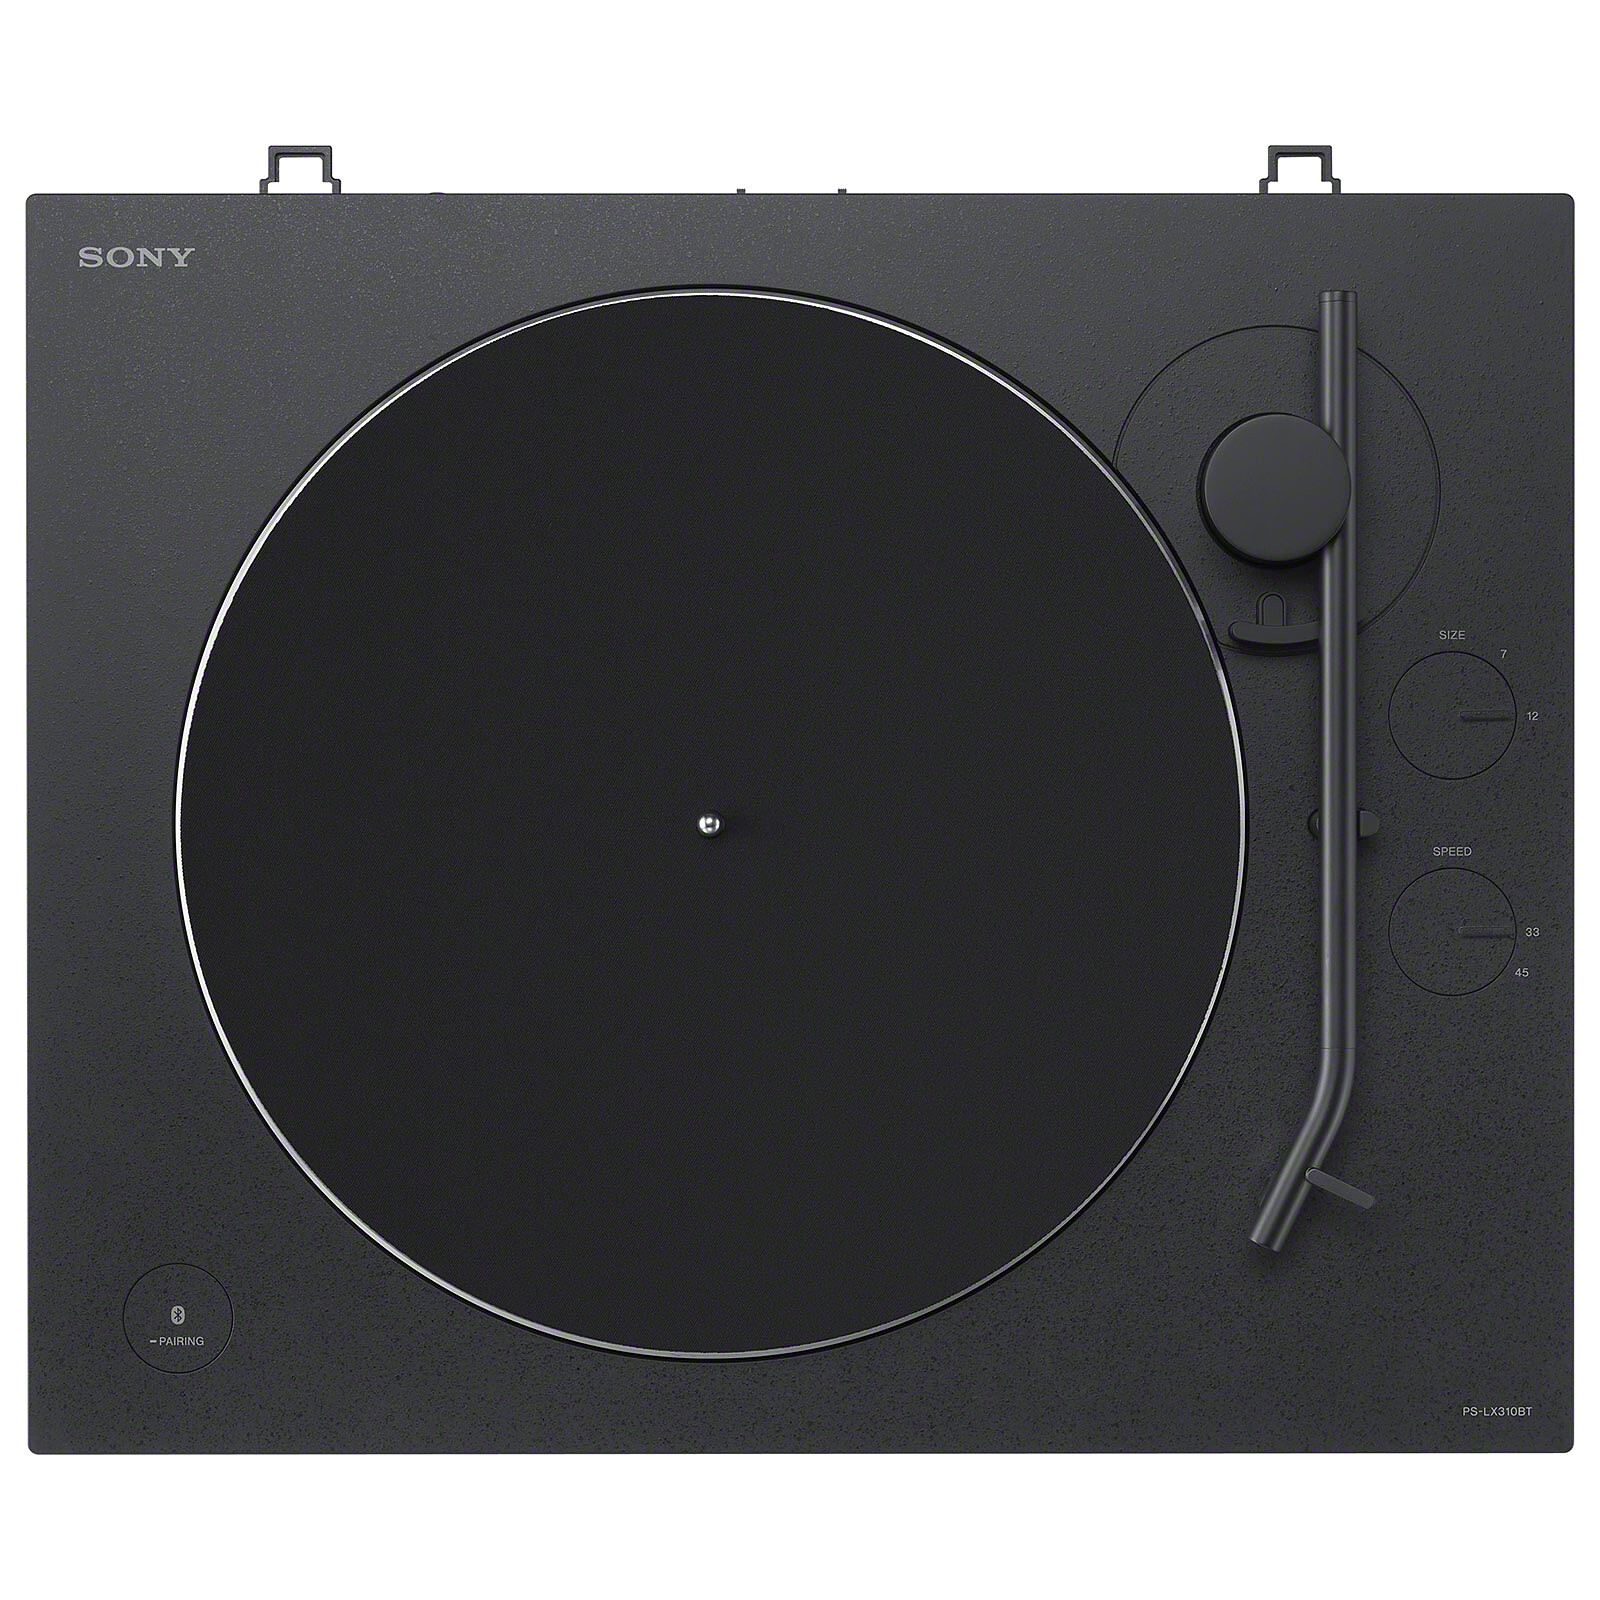 Sony PS-LX310BT Platine Vinyle avec Connectivité Bluetooth Noir